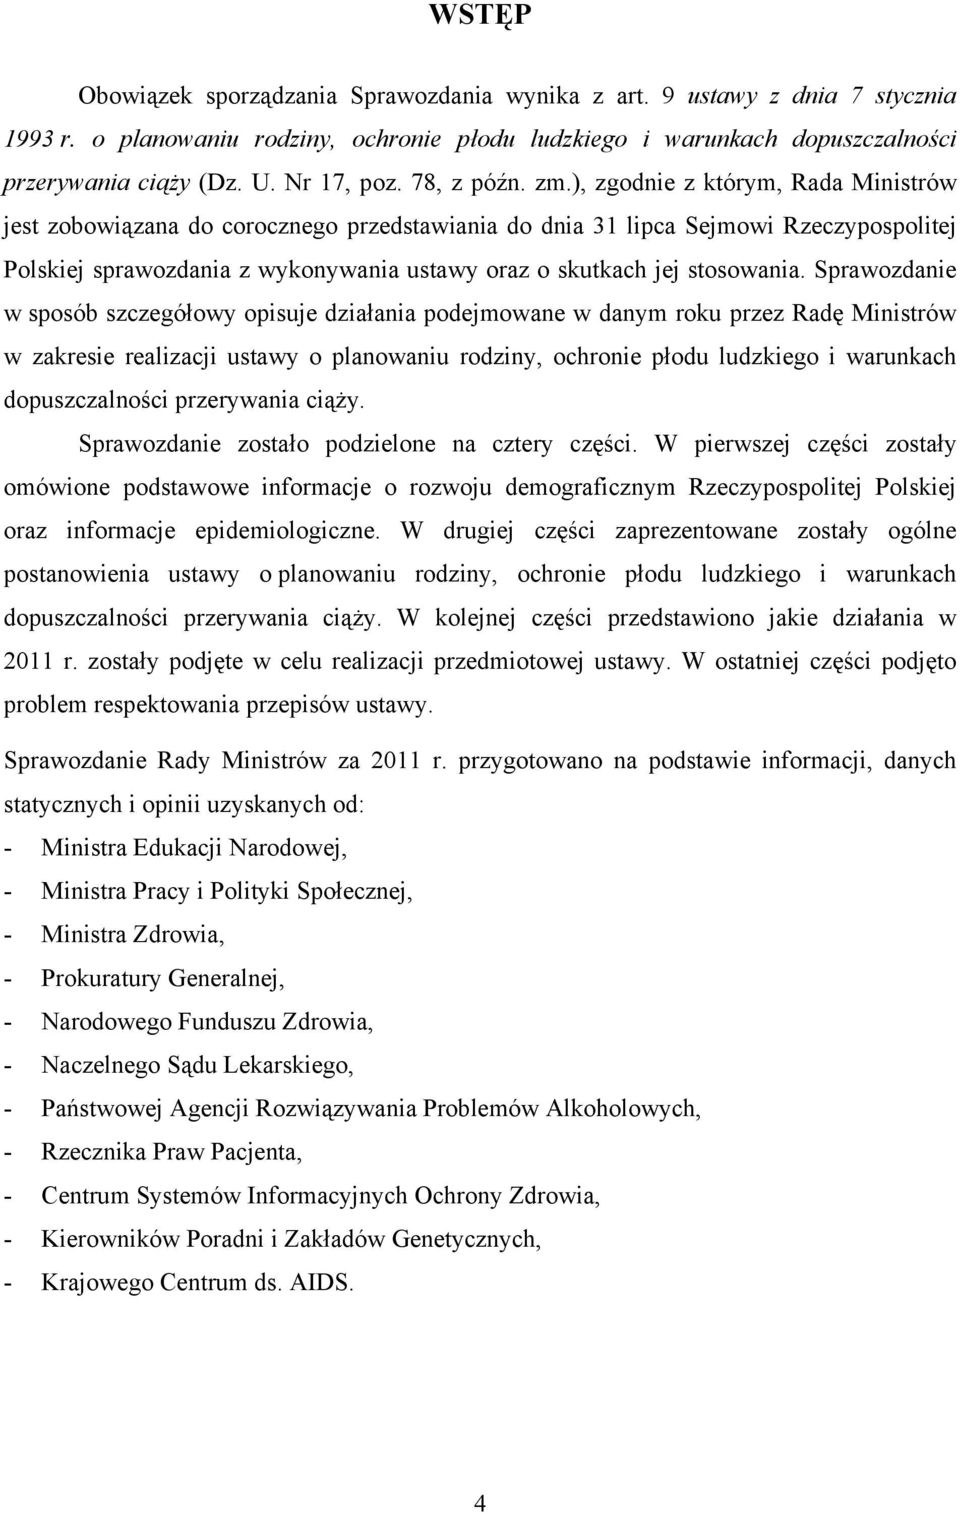 ), zgodnie z którym, Rada Ministrów jest zobowiązana do corocznego przedstawiania do dnia 31 lipca Sejmowi Rzeczypospolitej Polskiej sprawozdania z wykonywania ustawy oraz o skutkach jej stosowania.